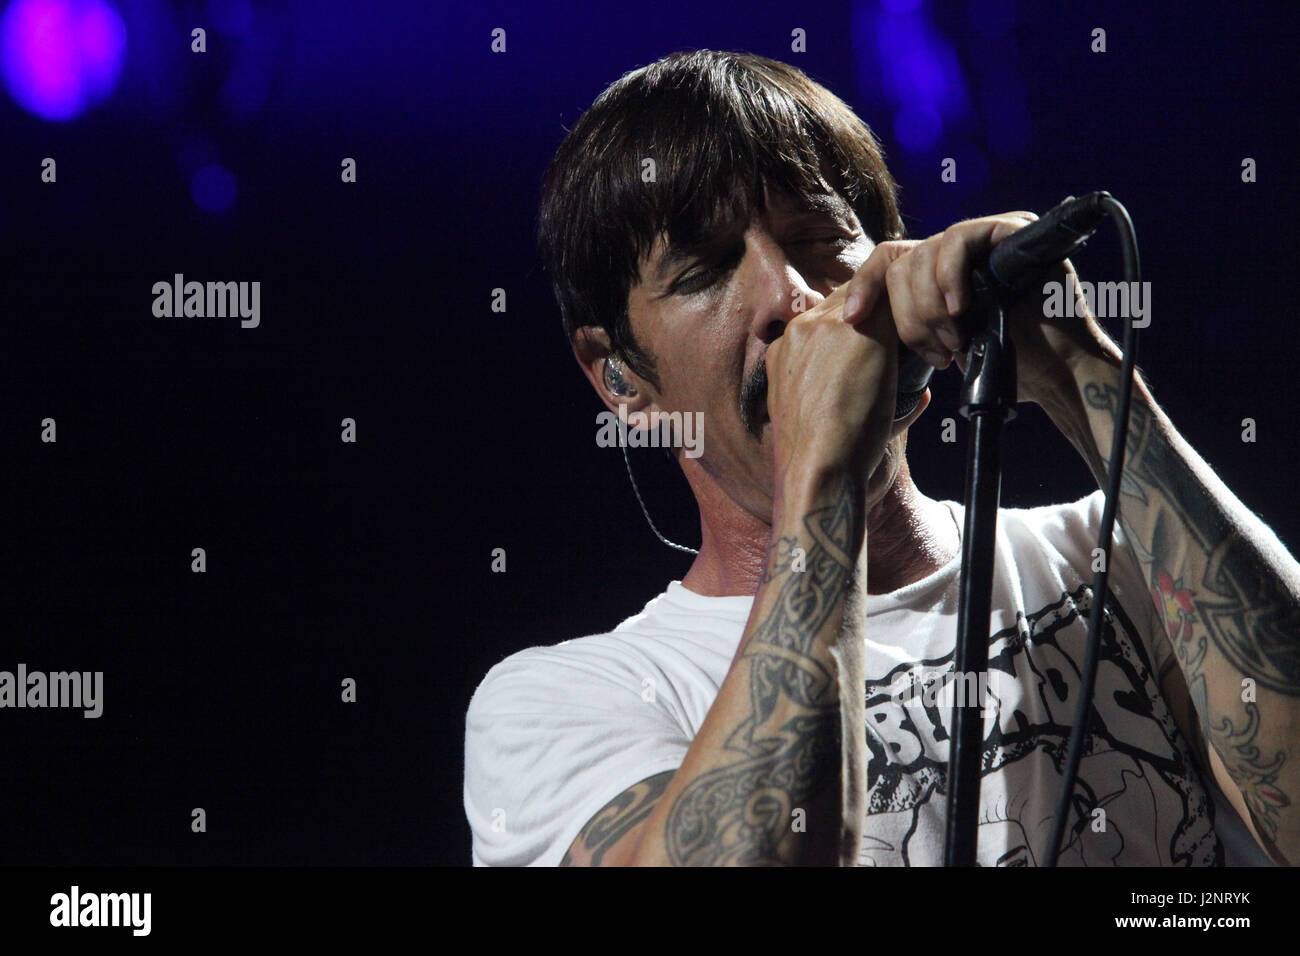 Miami, FL, USA. Apr 29, 2017. Floride, États-Unis - États-Unis - Red Hot Chili Peppers réalisé leurs chansons rock funk pendant un spectacle à l'AmericanAirlines Arena de Miami le 29 avril : Crédit Sun-Sentinel/ZUMA/Alamy Fil Live News Banque D'Images